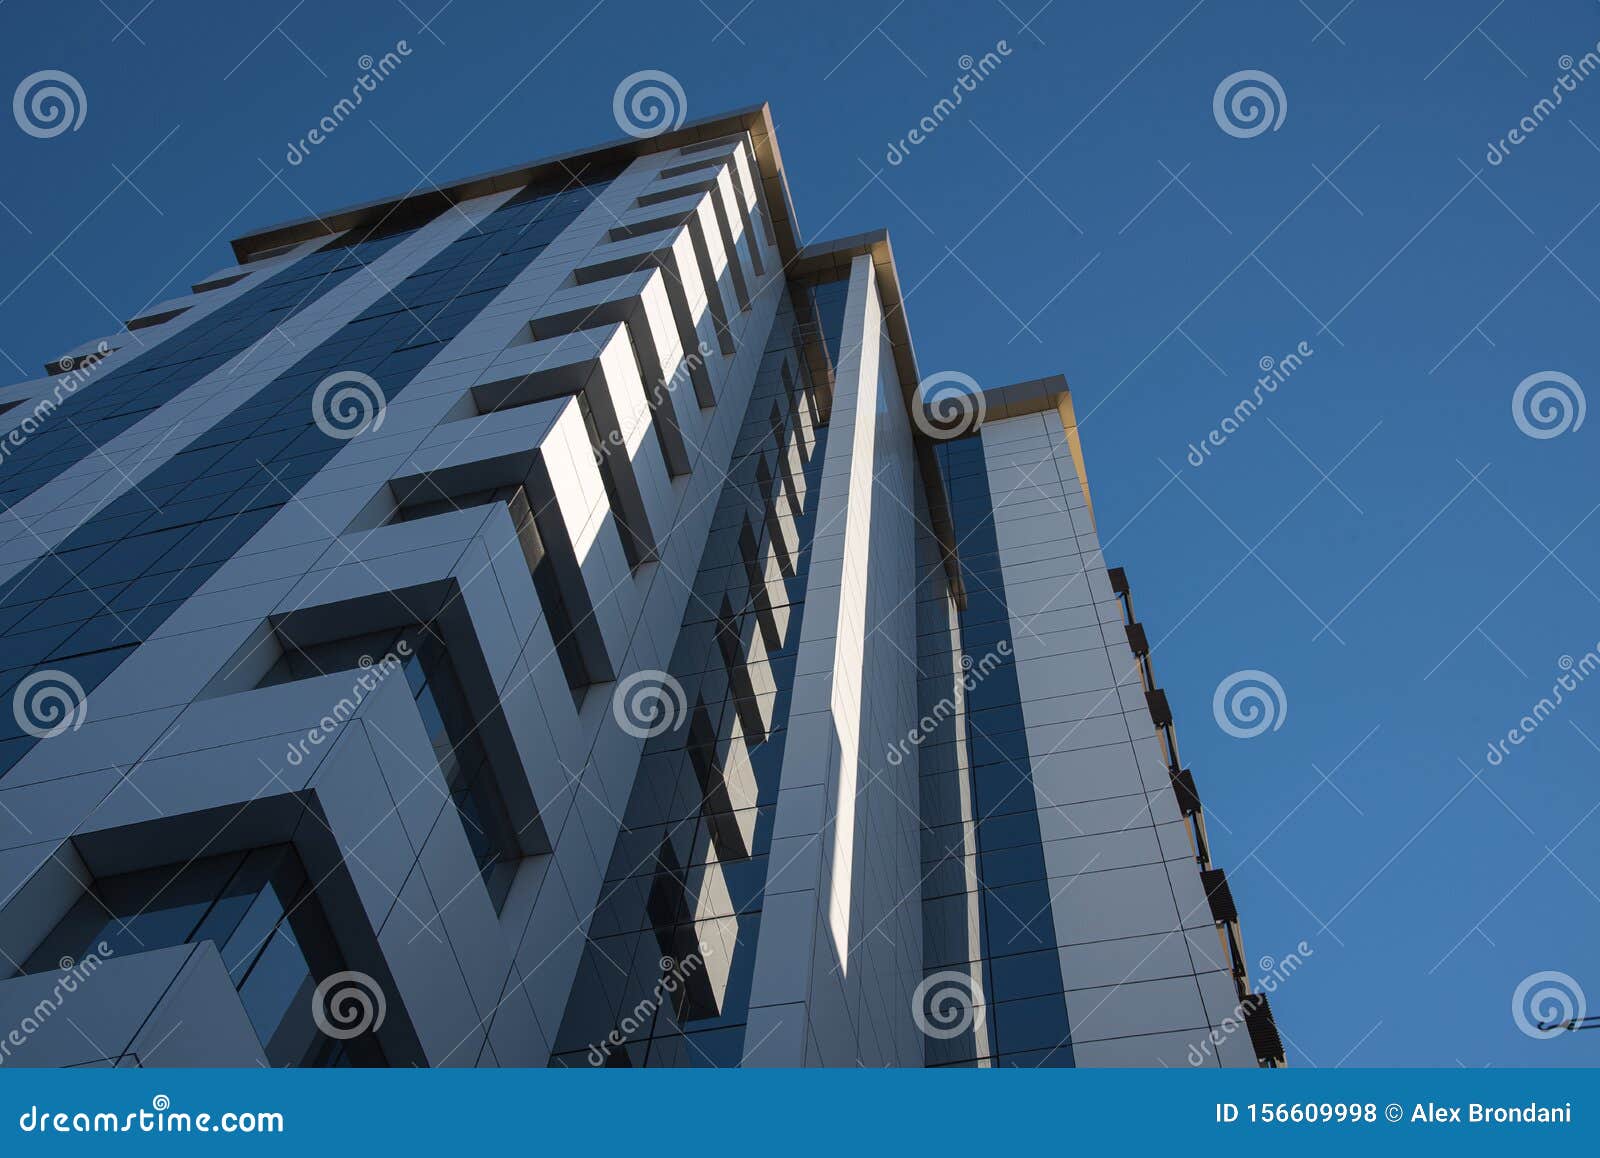 the glazed faÃÂ§ade of the residential building 07